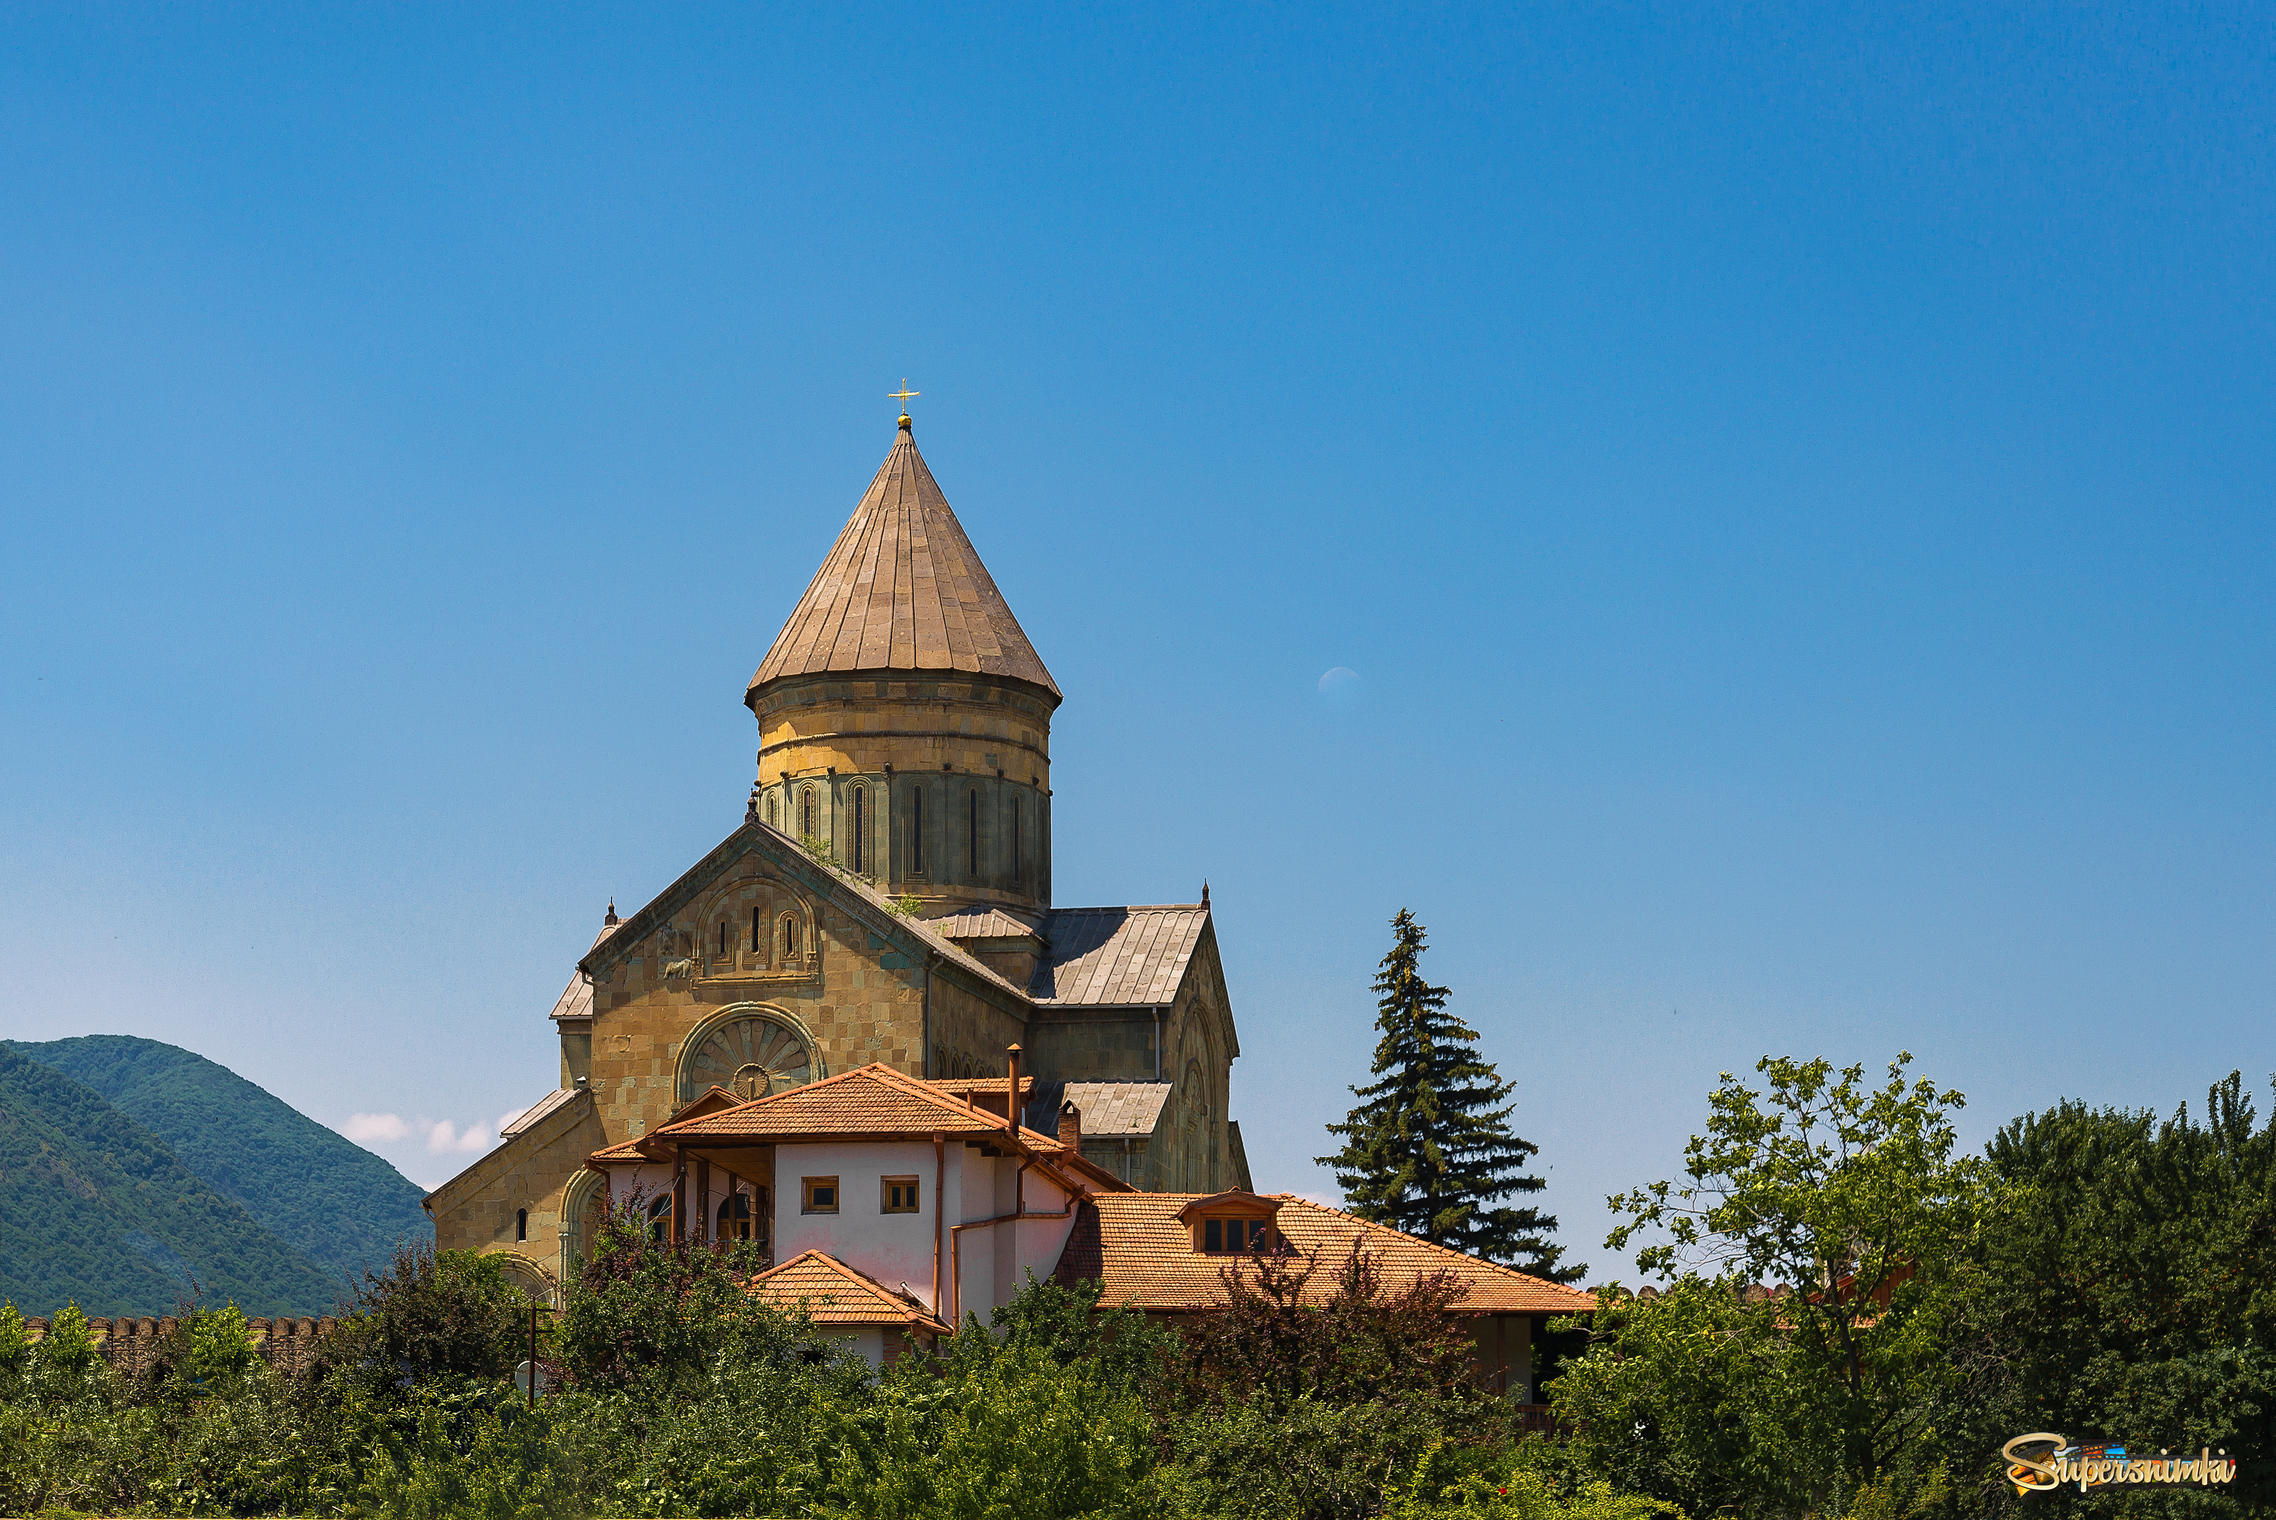 Светицховели (животворящий столп) — кафедральный патриарший храм Грузинской православной церкви в Мцхете, который на протяжении тысячелетия являлся главным собором всей Грузии. 